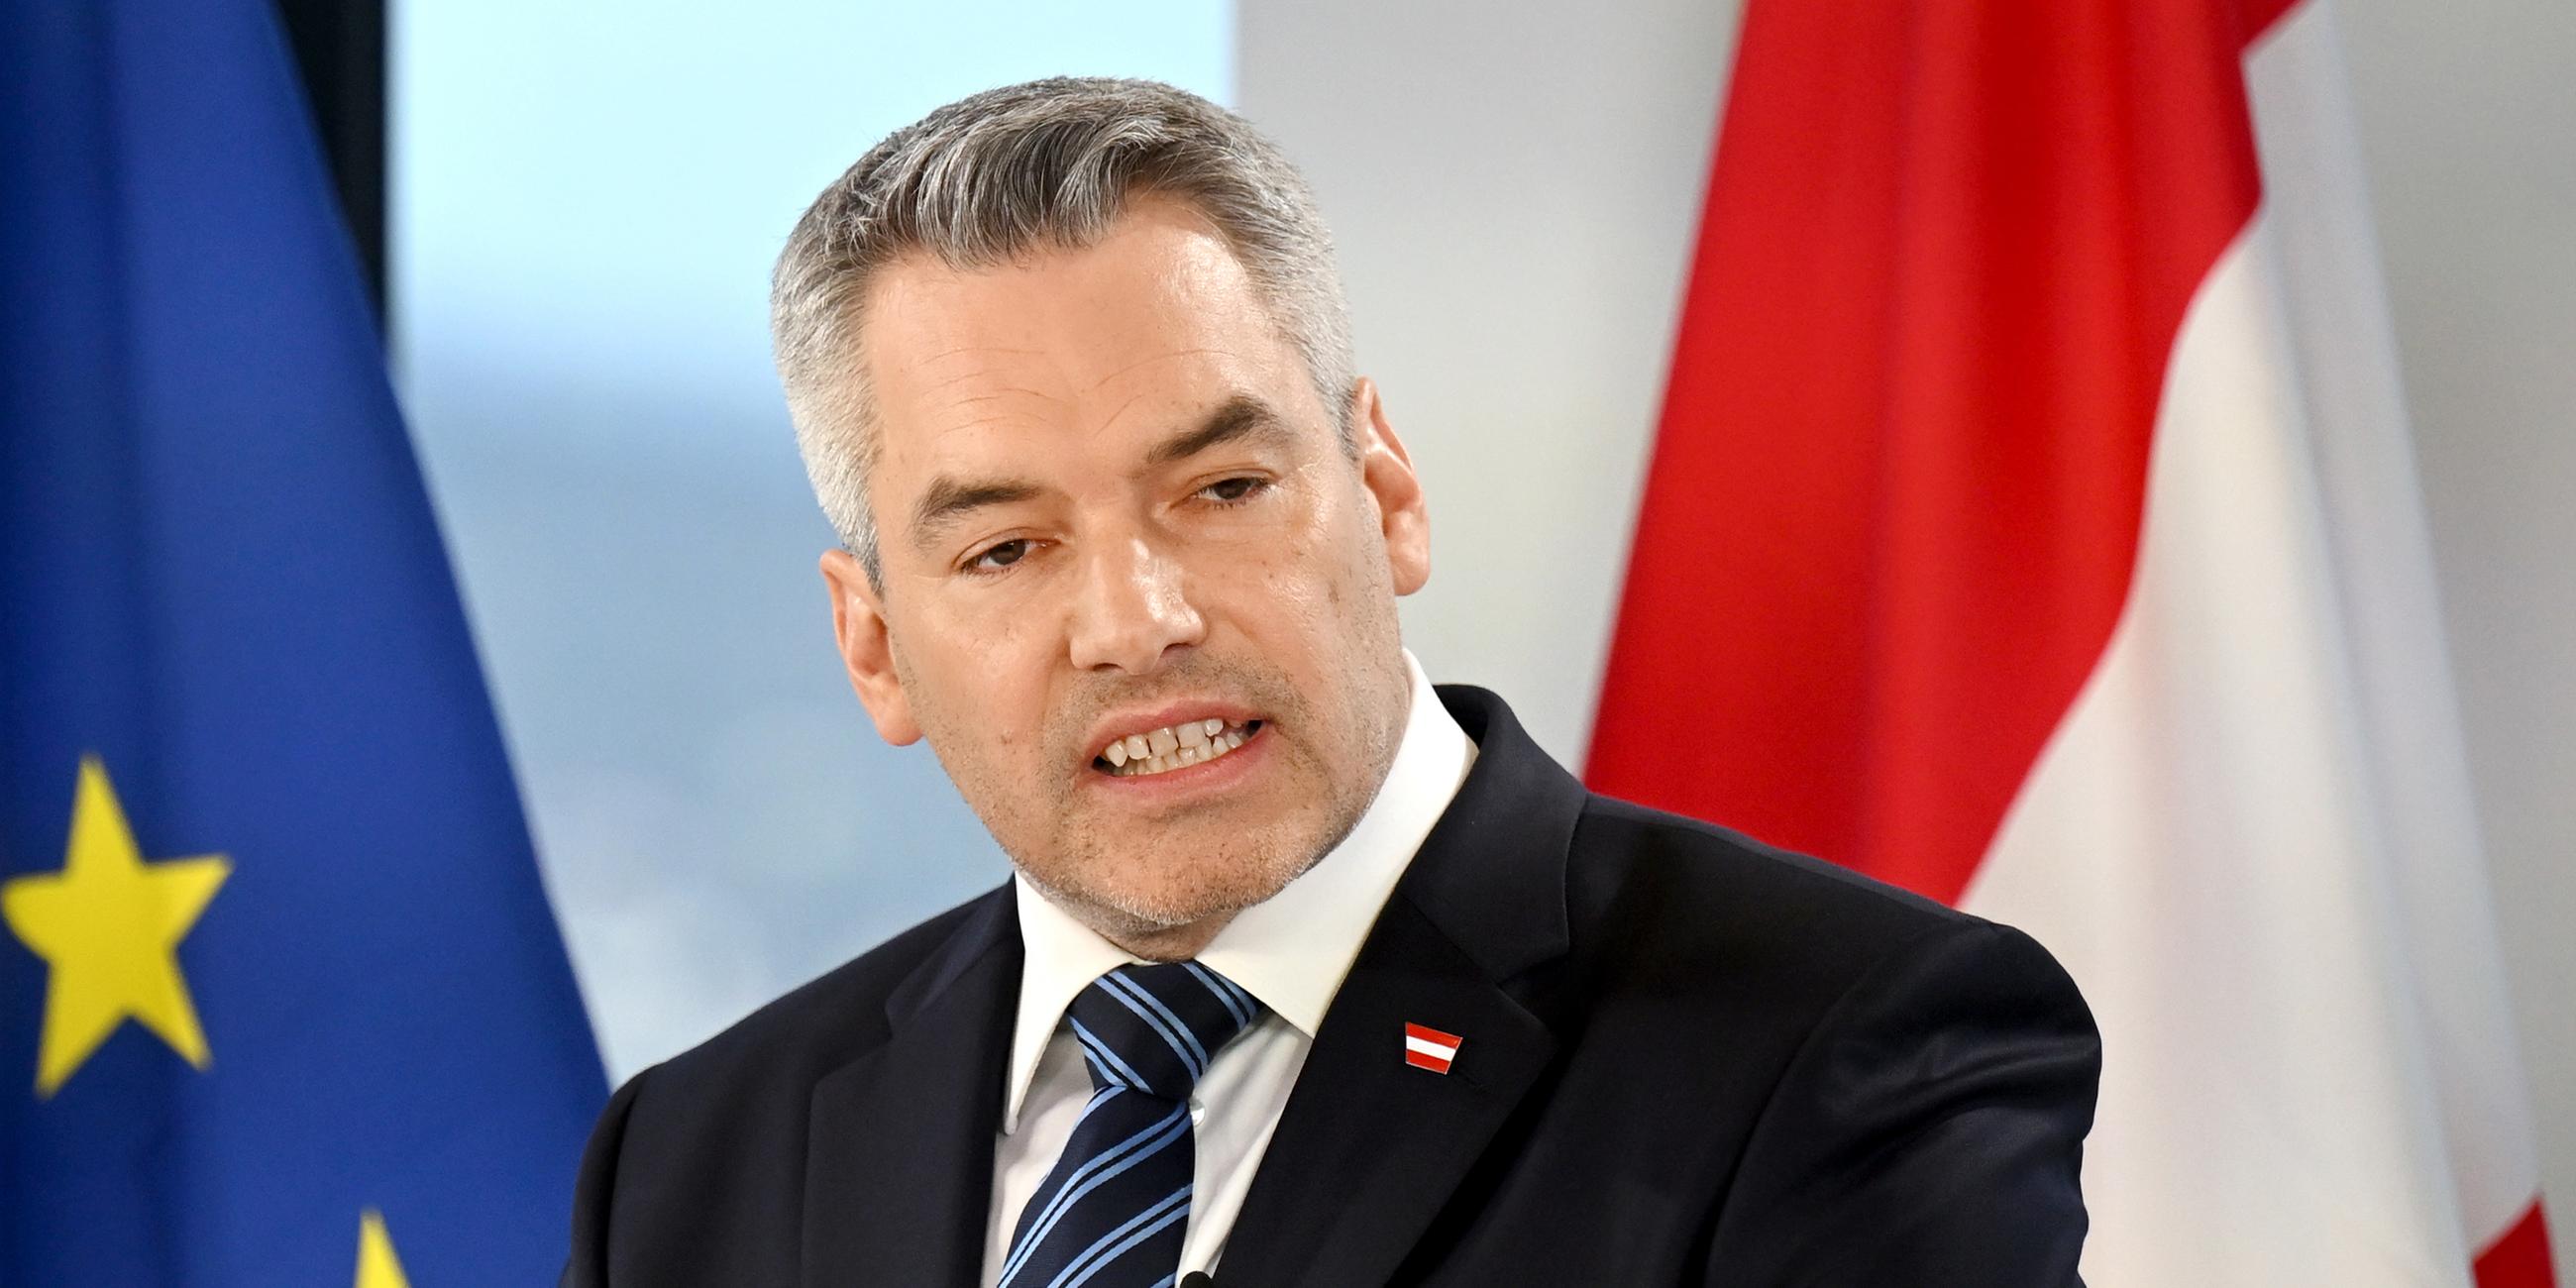 Österreichs Bundeskanzler Karl Nehammer